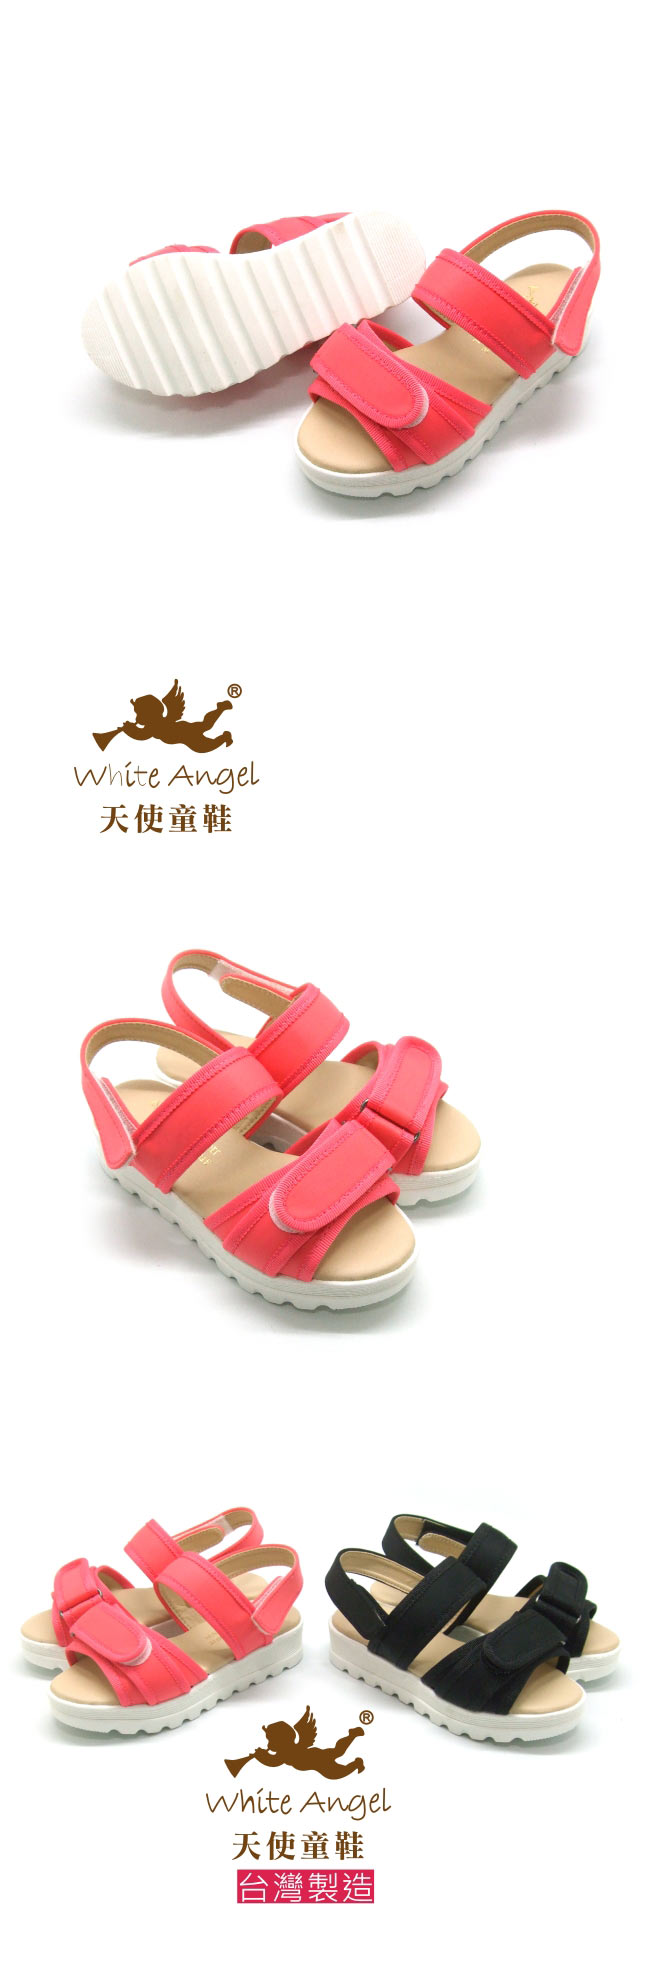 天使童鞋-J826休閒隨性厚底涼鞋 (中-大童)-活潑桃